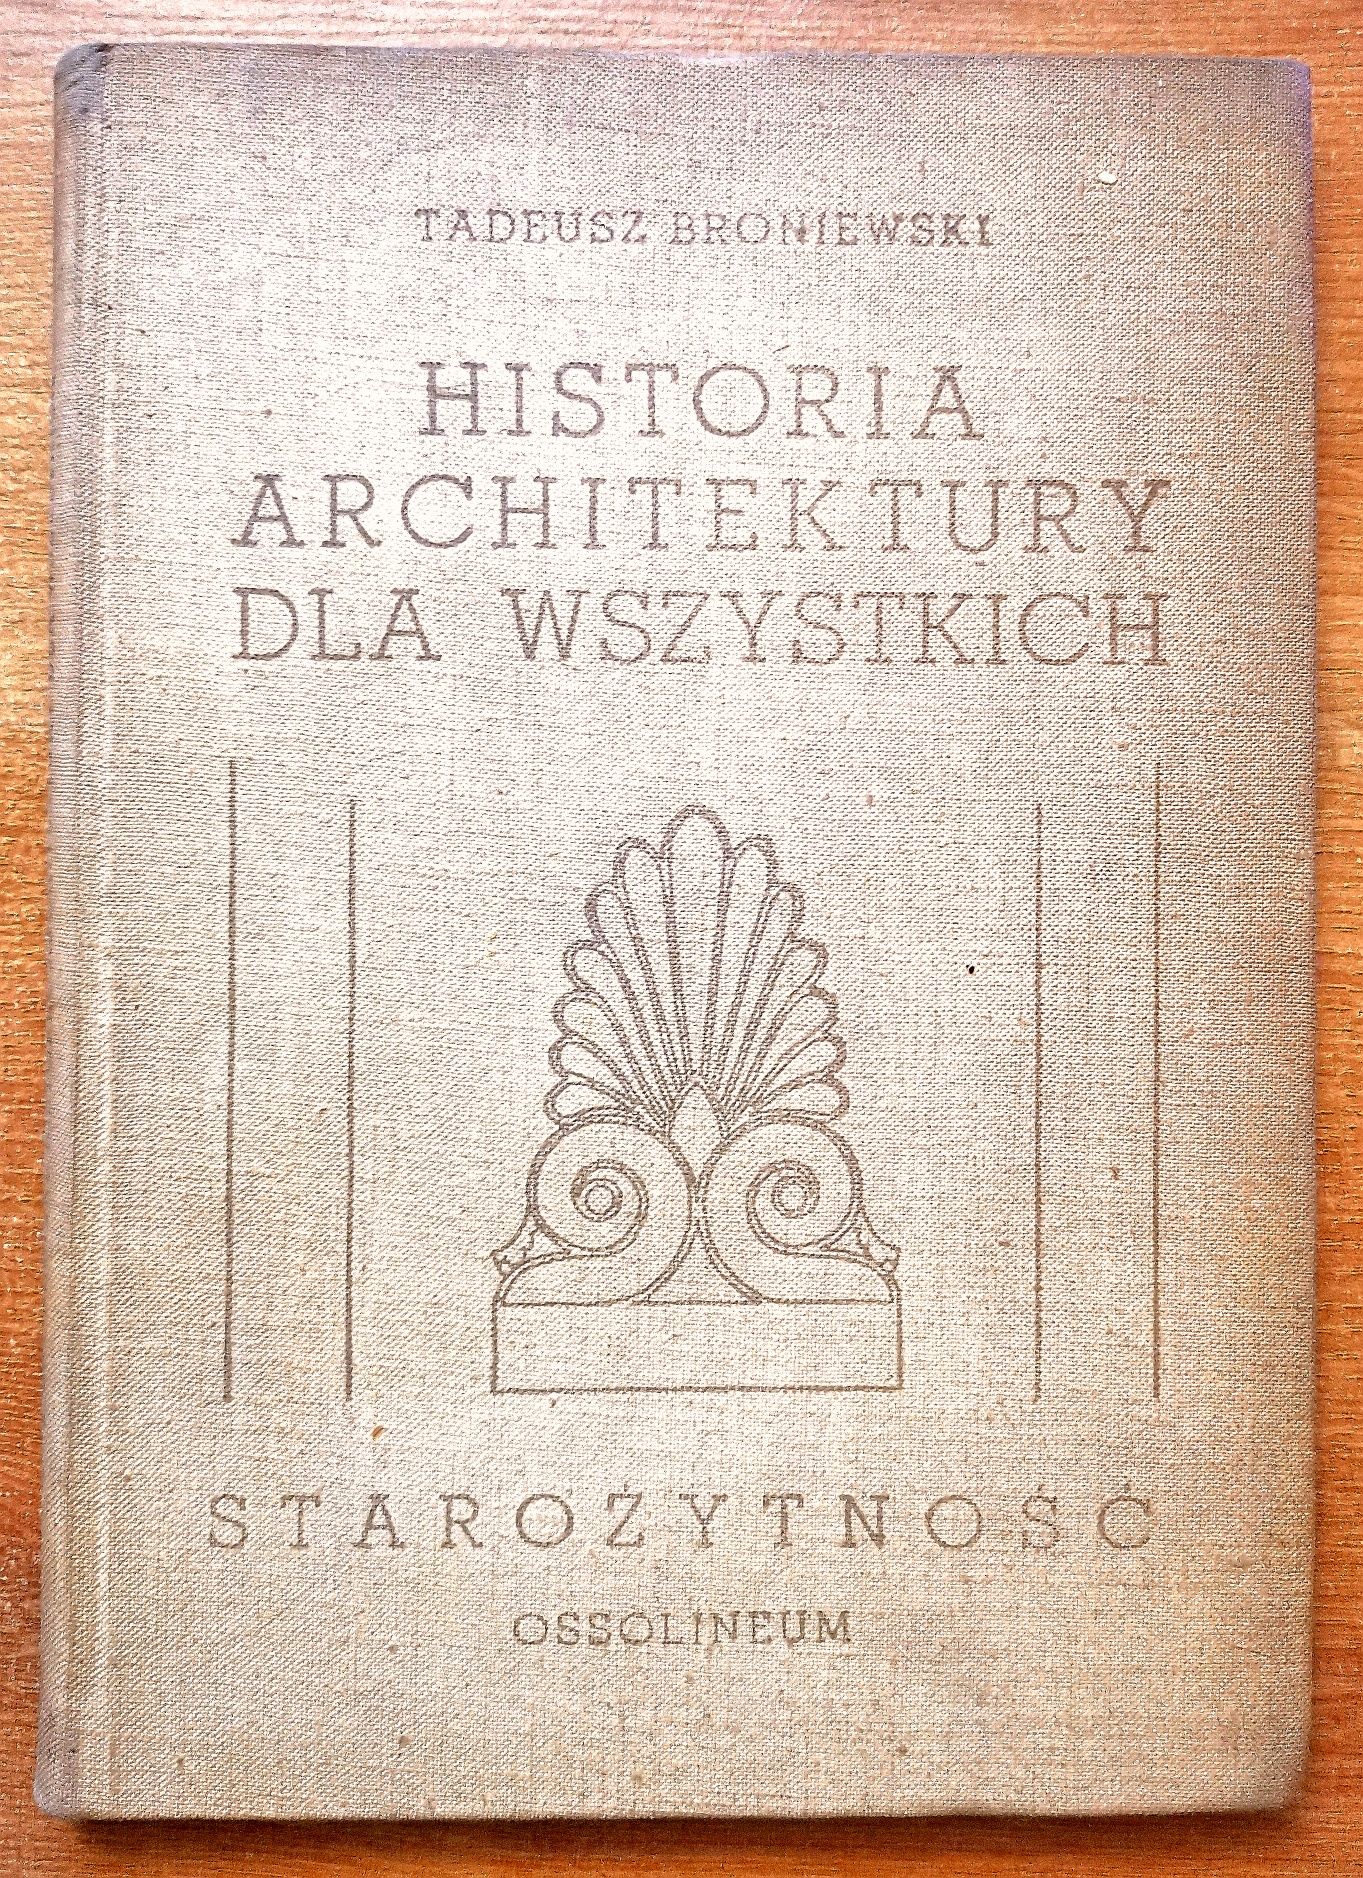 Historia architektury dla wszystkich - Starożytność